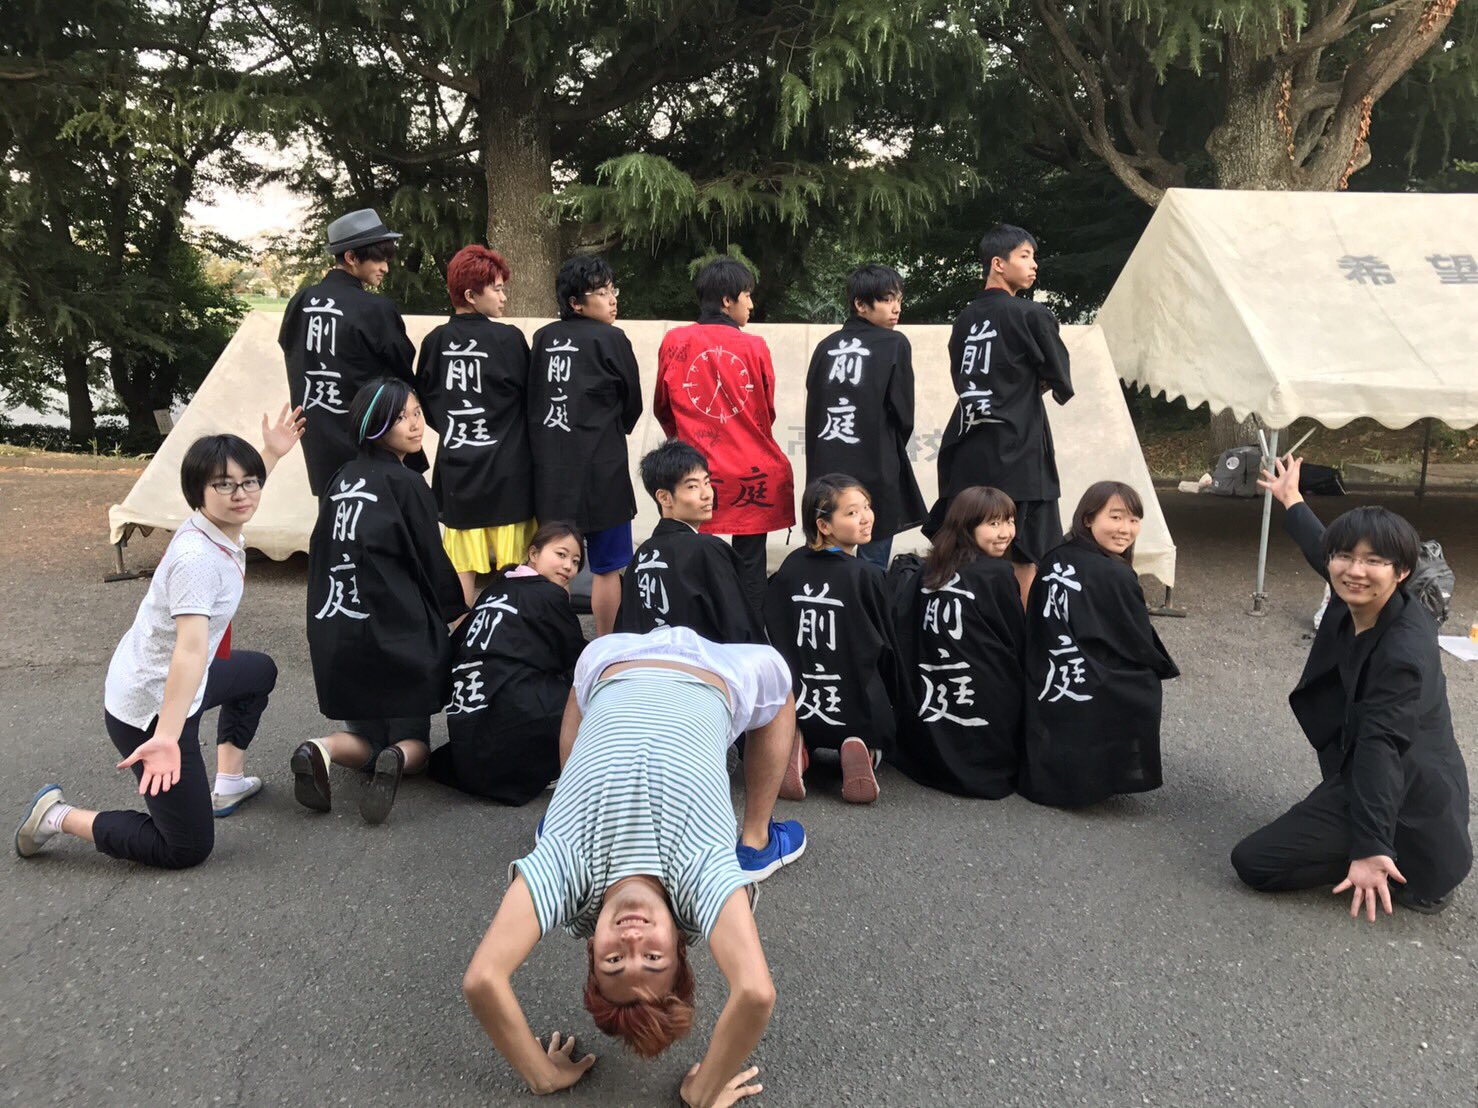 うっちー 6月17 18日に神奈川県立希望ケ丘高校で文化祭があります 明日だよ 驚愕 僕は2 5次元という見るに耐えない団体に出演します そして 水泳部ではシンクロがあります 今年も力が入ってるので どうぞ期待してください 記念祭 希望ヶ丘